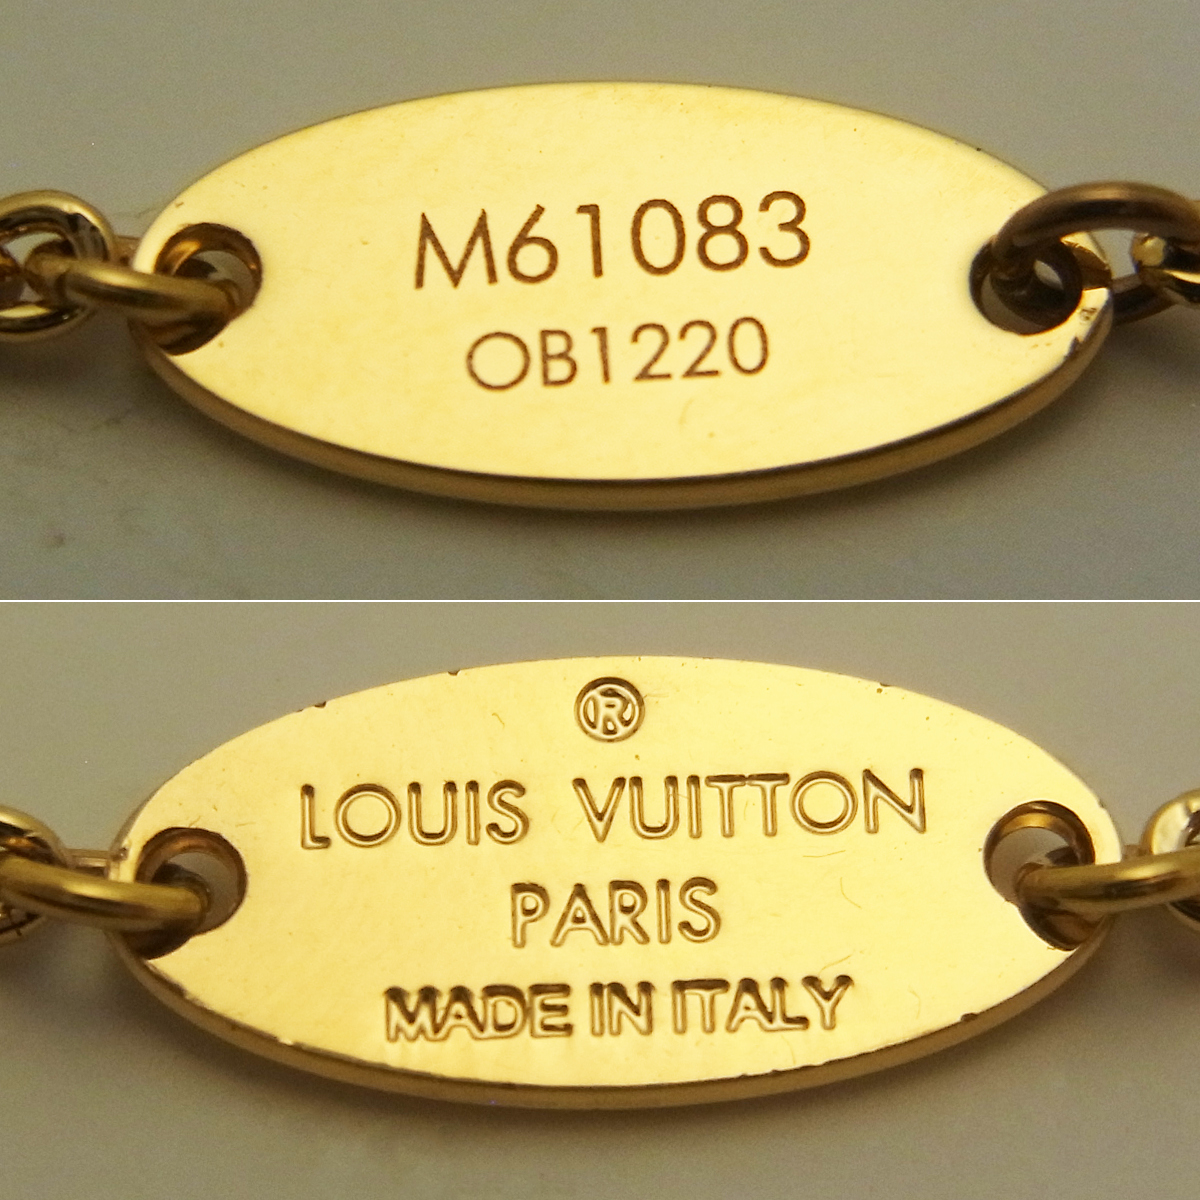 ルイヴィトン(Louis Vuitton) ネックレス・エセンシャル V M61083 箱 ゴールドカラー